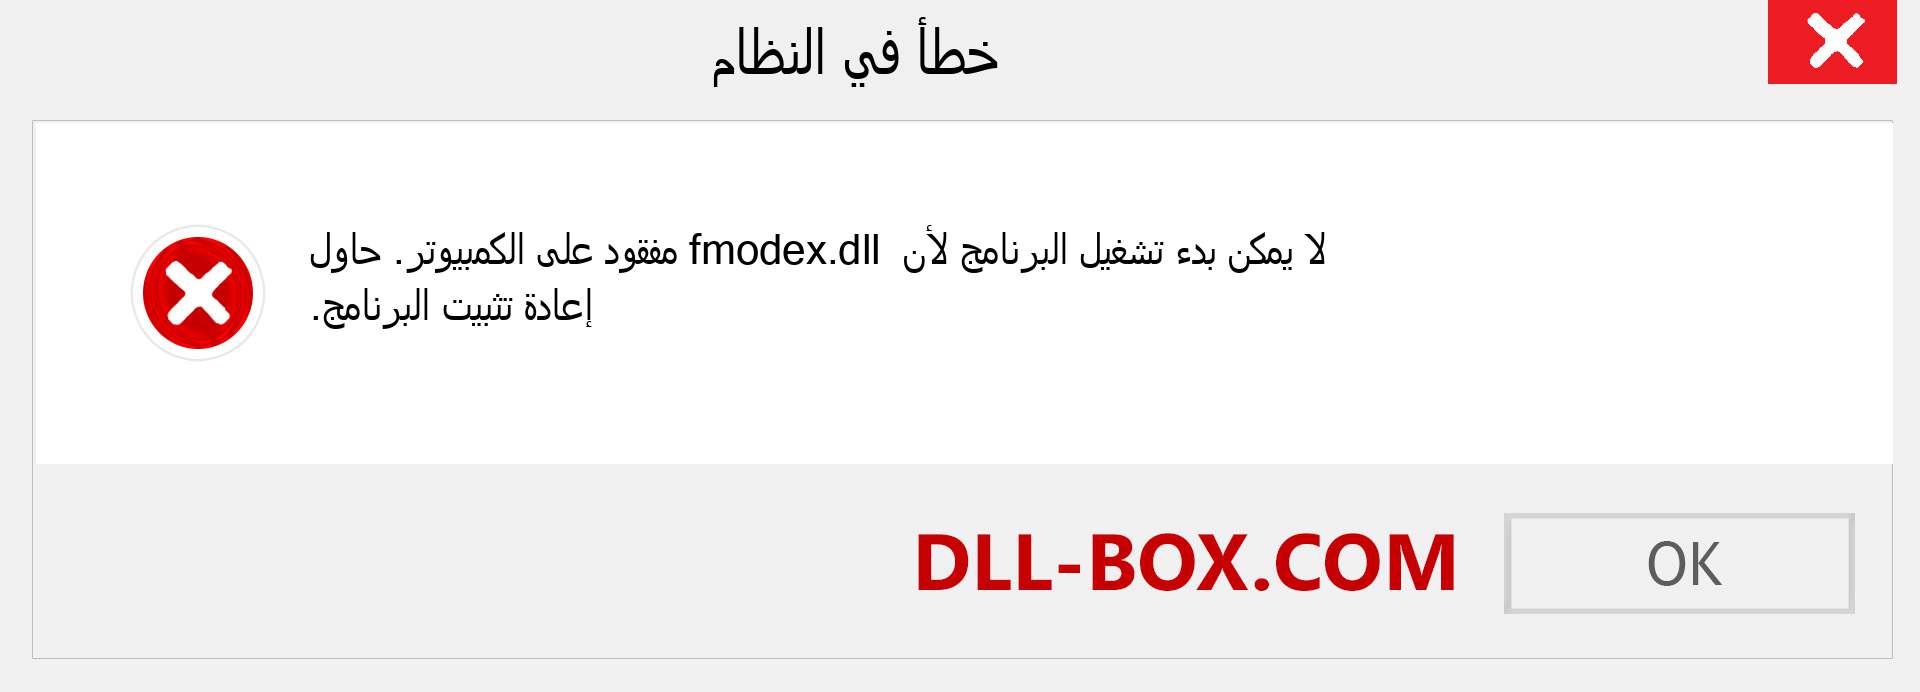 ملف fmodex.dll مفقود ؟. التنزيل لنظام التشغيل Windows 7 و 8 و 10 - إصلاح خطأ fmodex dll المفقود على Windows والصور والصور